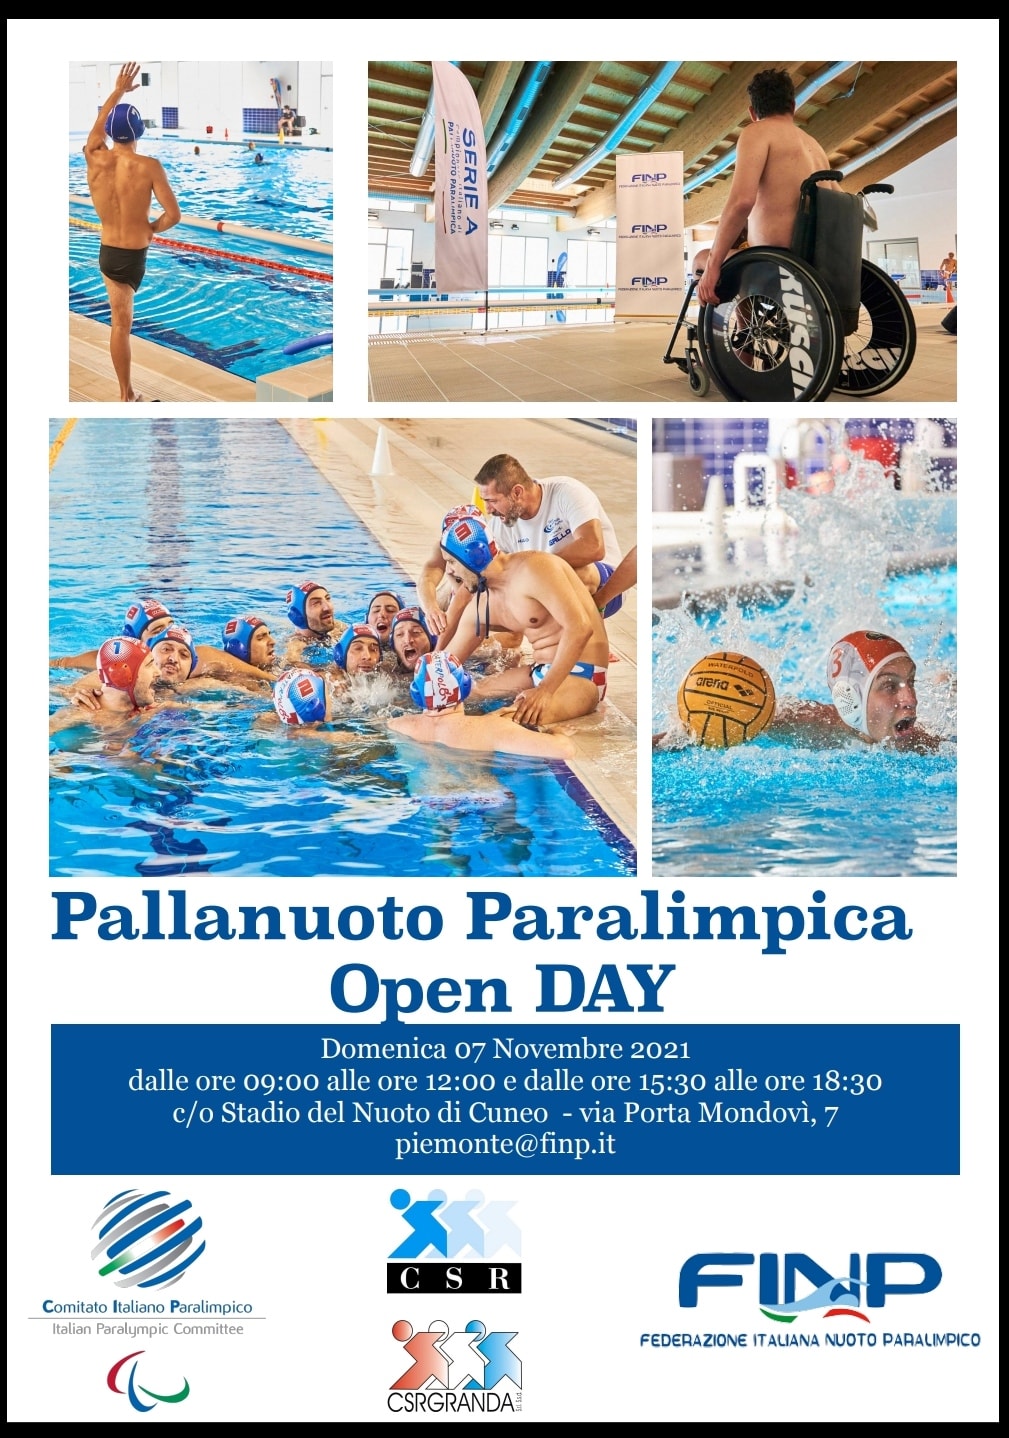 Pallanuoto Paralimpica, domenica 7 novembre a Cuneo il primo Open Day